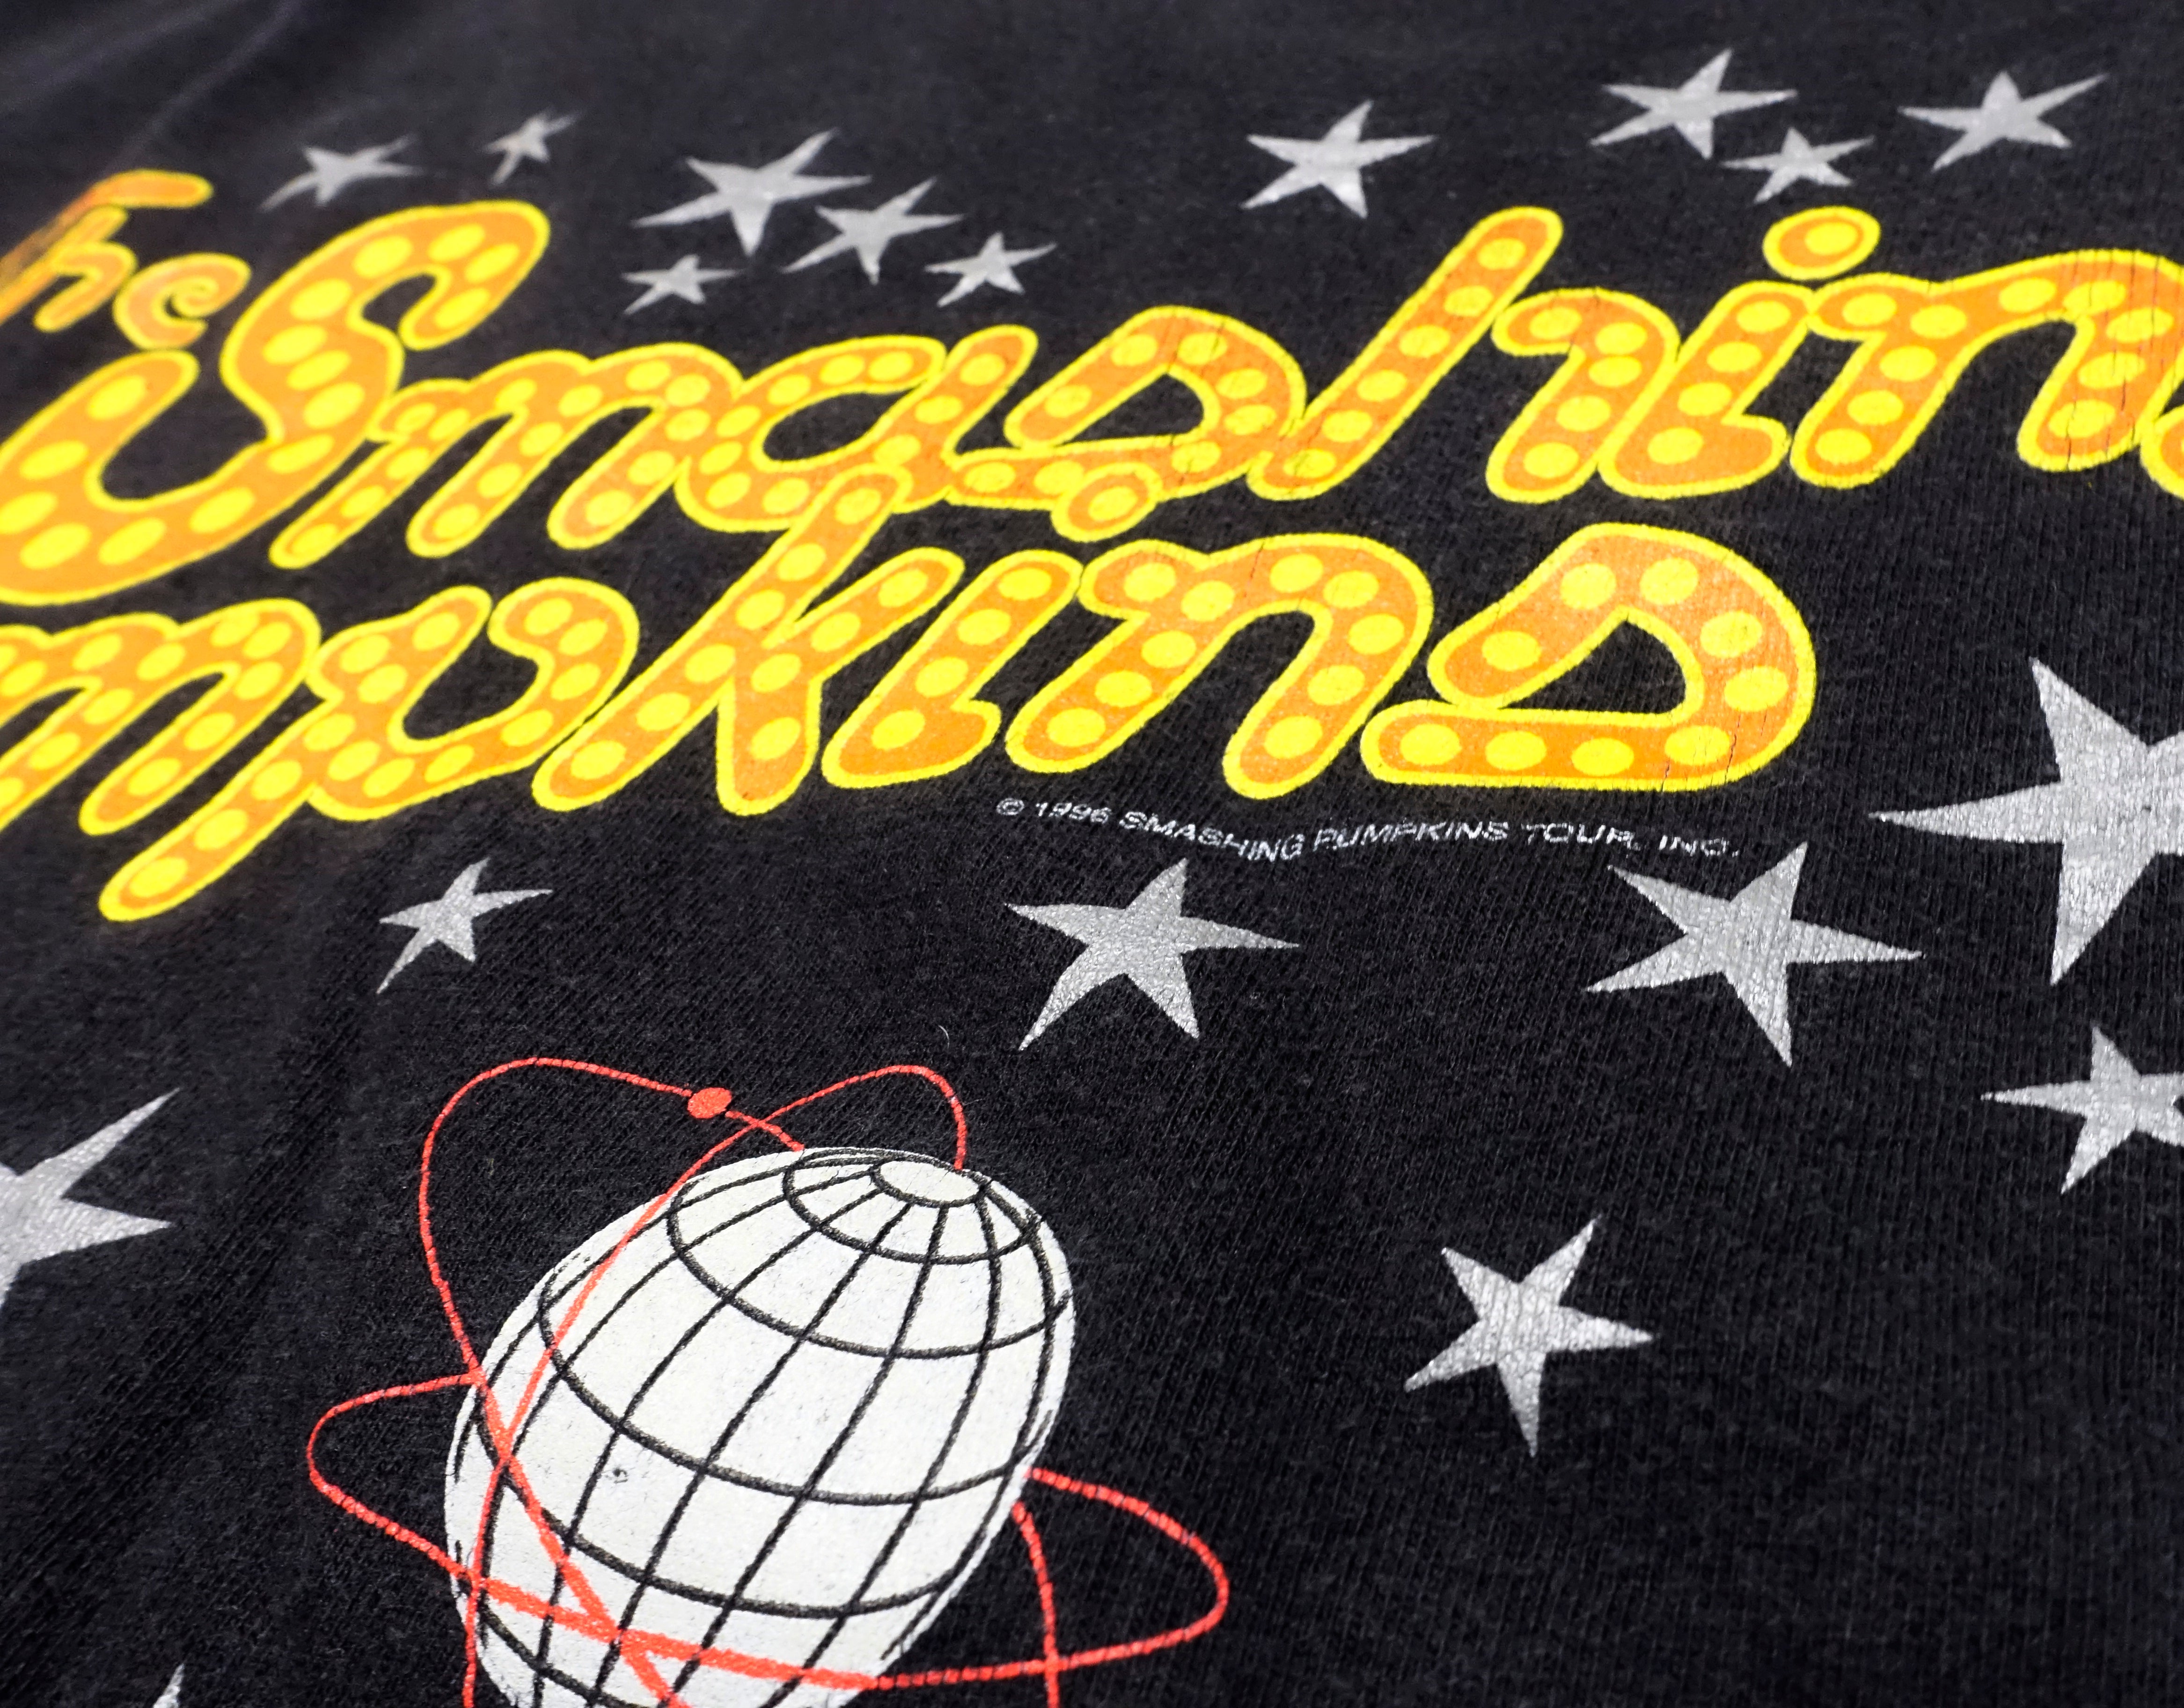 Smashing Pumpkins - Spaceboy 1996 Tour Shirt Size XL